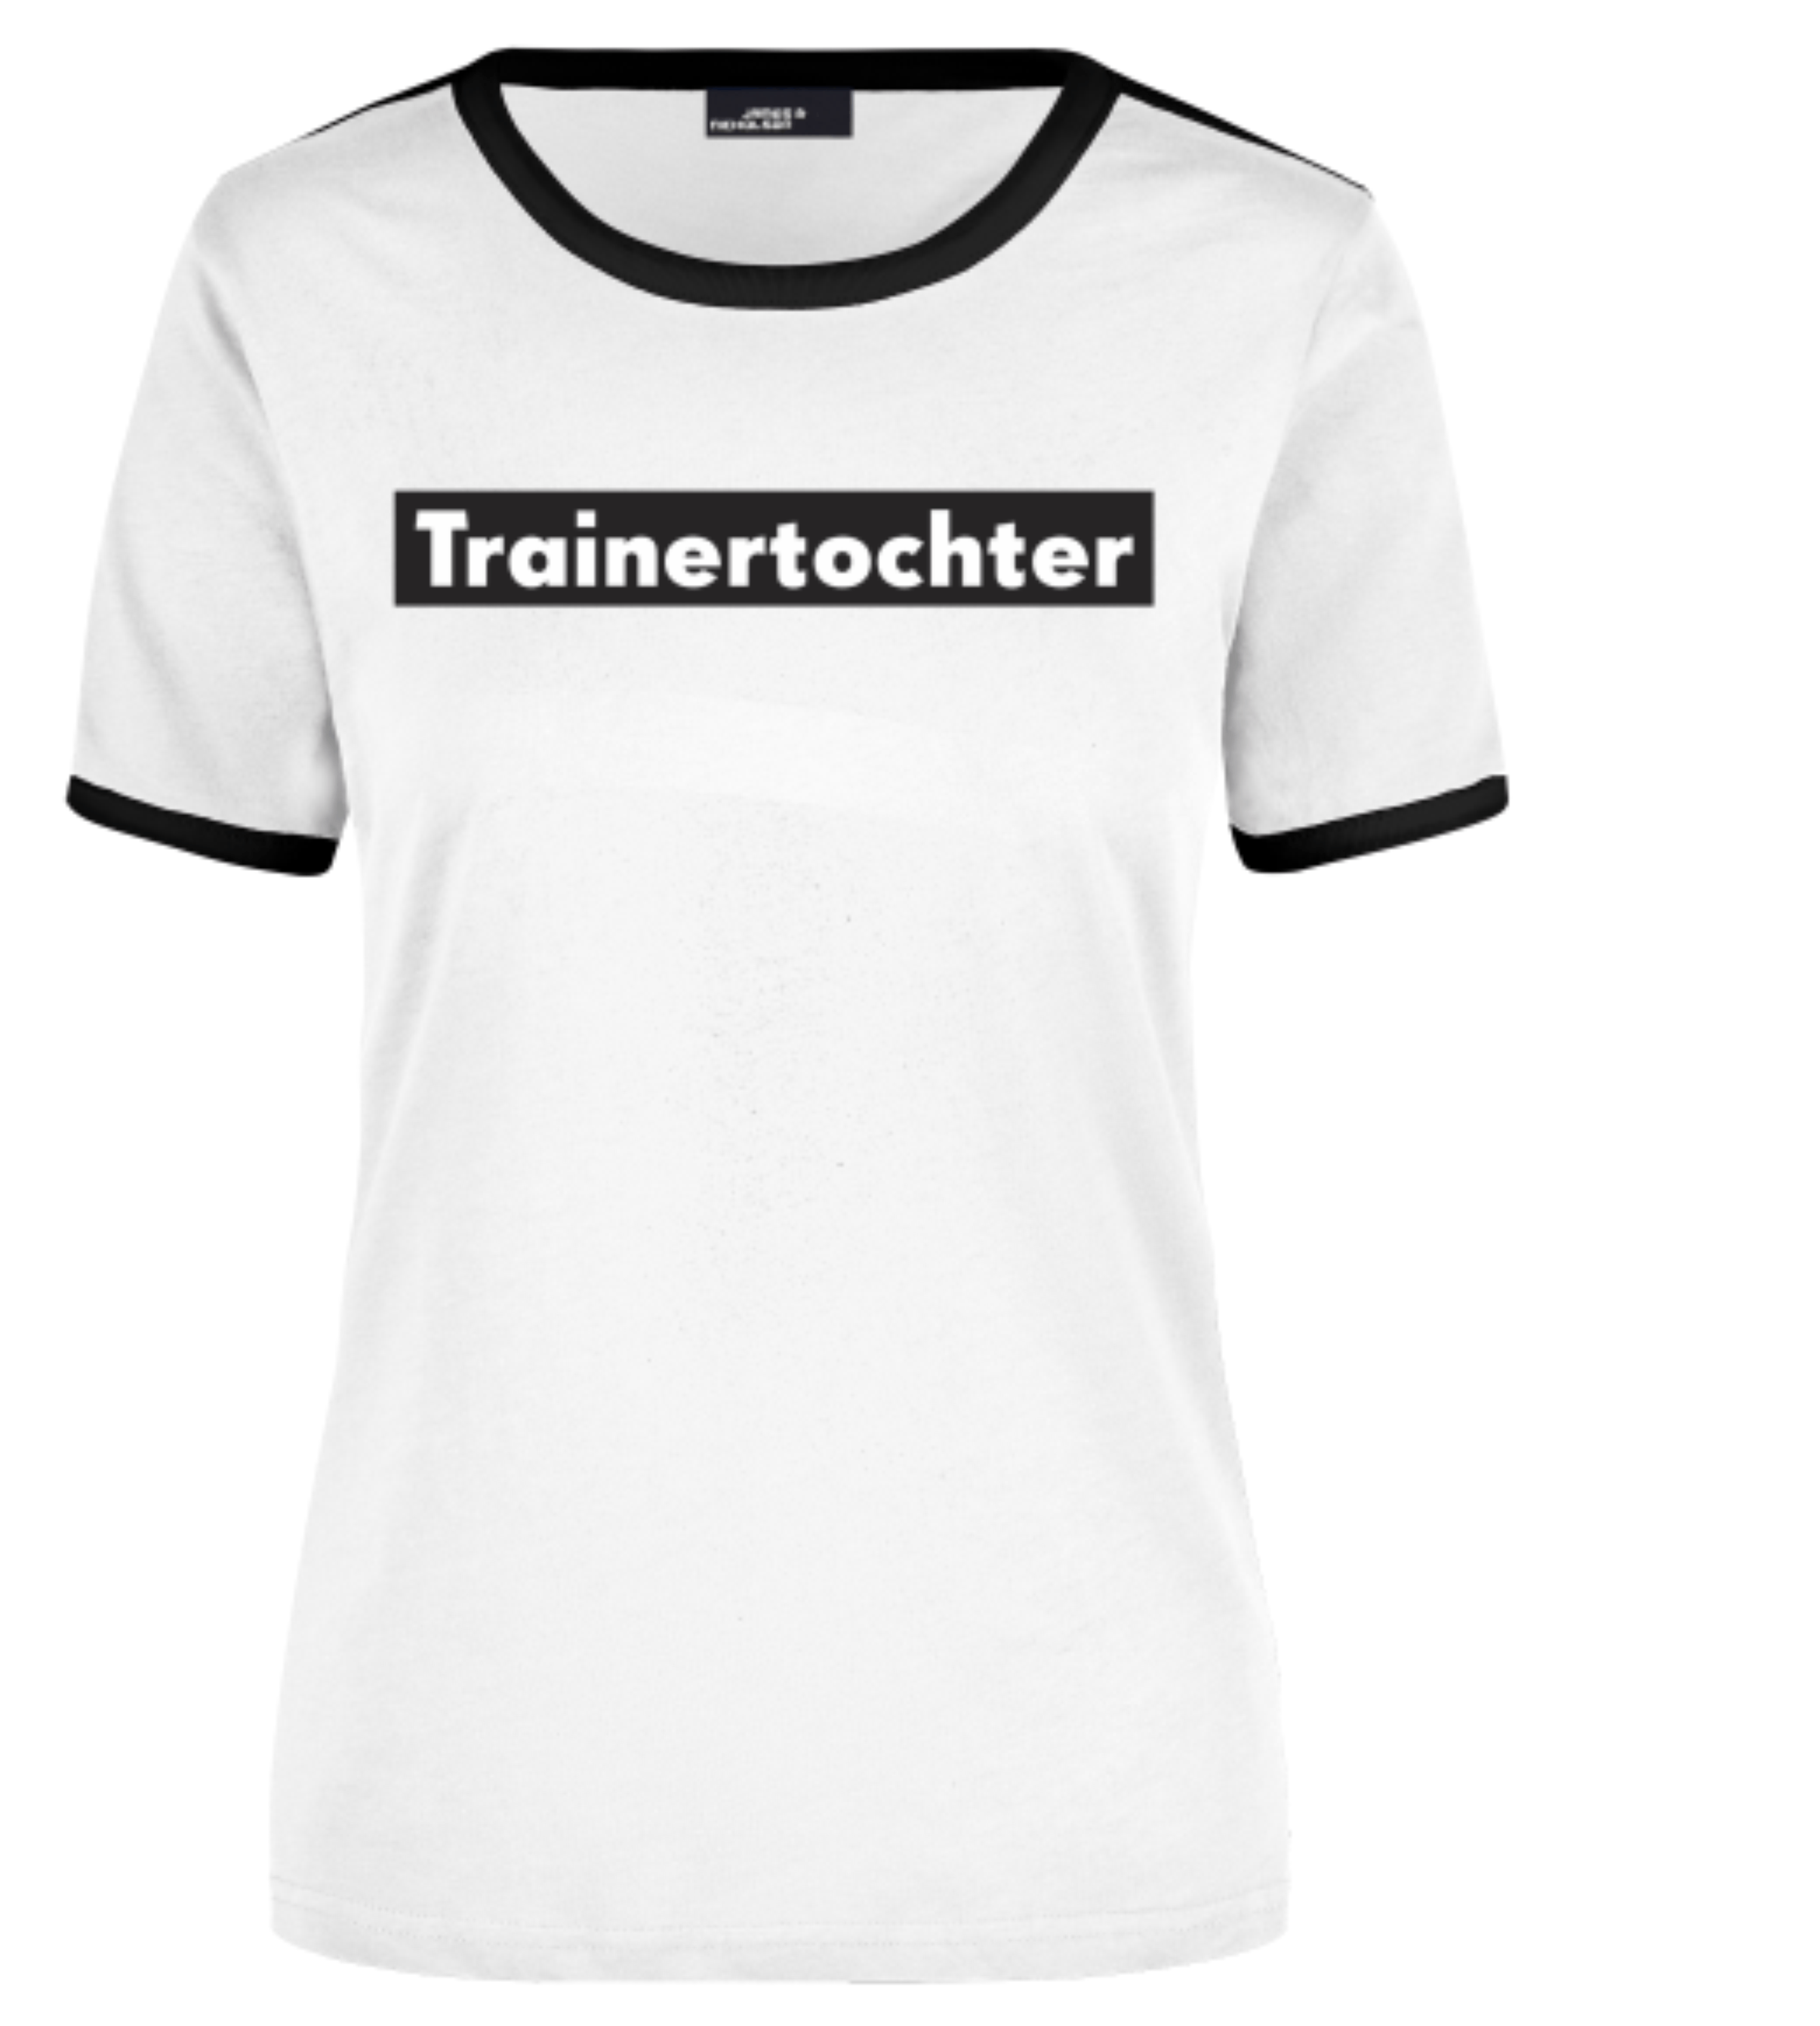 T-Shirt "Trainertochter"